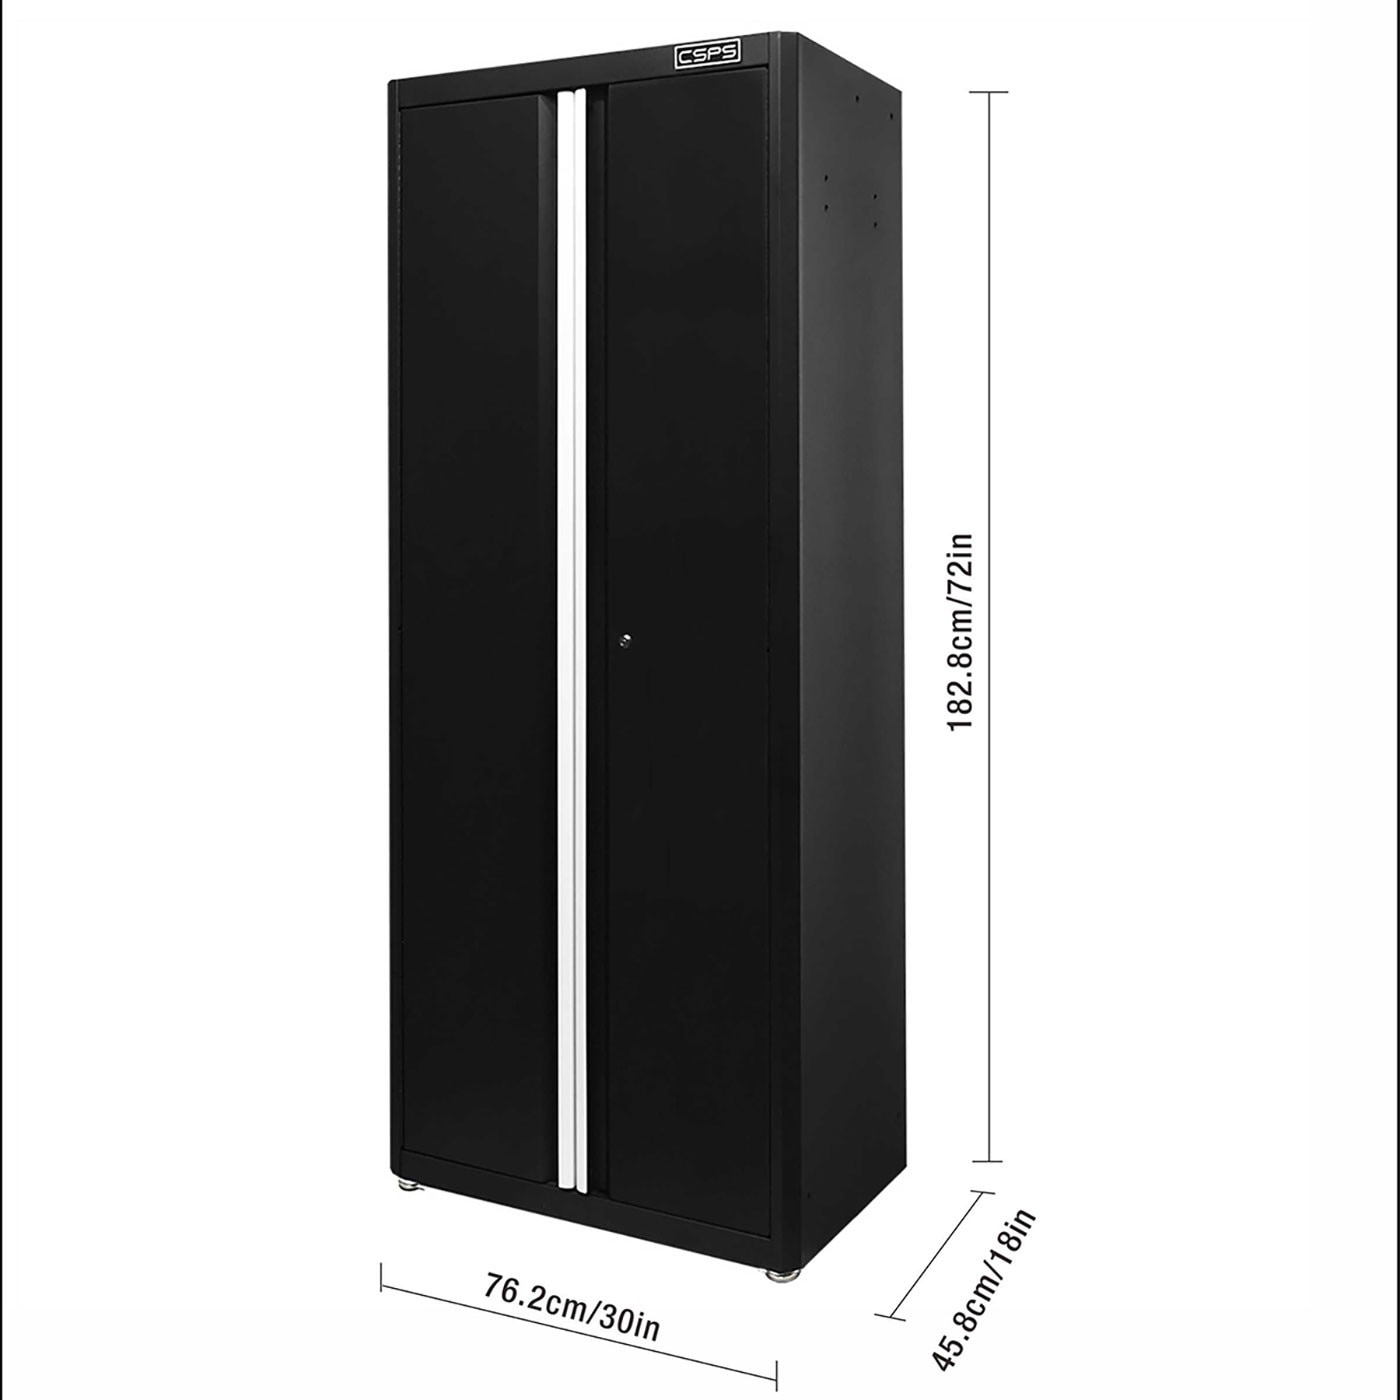 CSPS 71吋雙門高櫃 1.0公釐黑砂，可依需求高度隔成2個空間，易分類收納。配安全鎖匙，具保護性及隱私性，運用廣泛，居家或商業皆可使用。